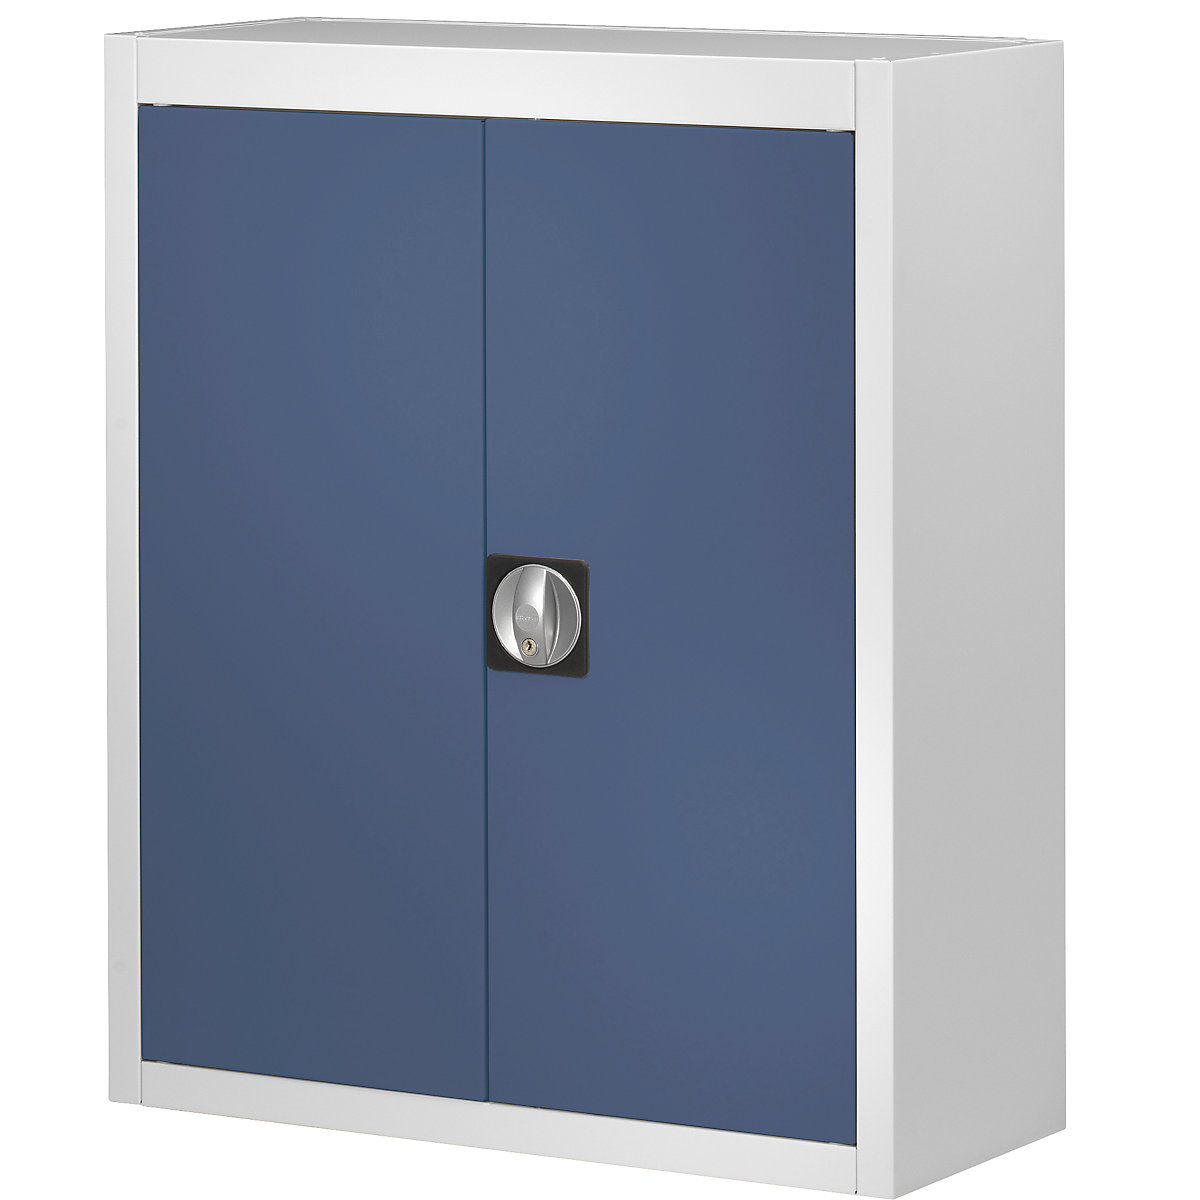 Skladová skriňa bez prepraviek s viditeľným obsahom – mauser, v x š x h 820 x 680 x 280 mm, dvojfarebná, korpus šedá, dvere modrá, od 3 ks-6